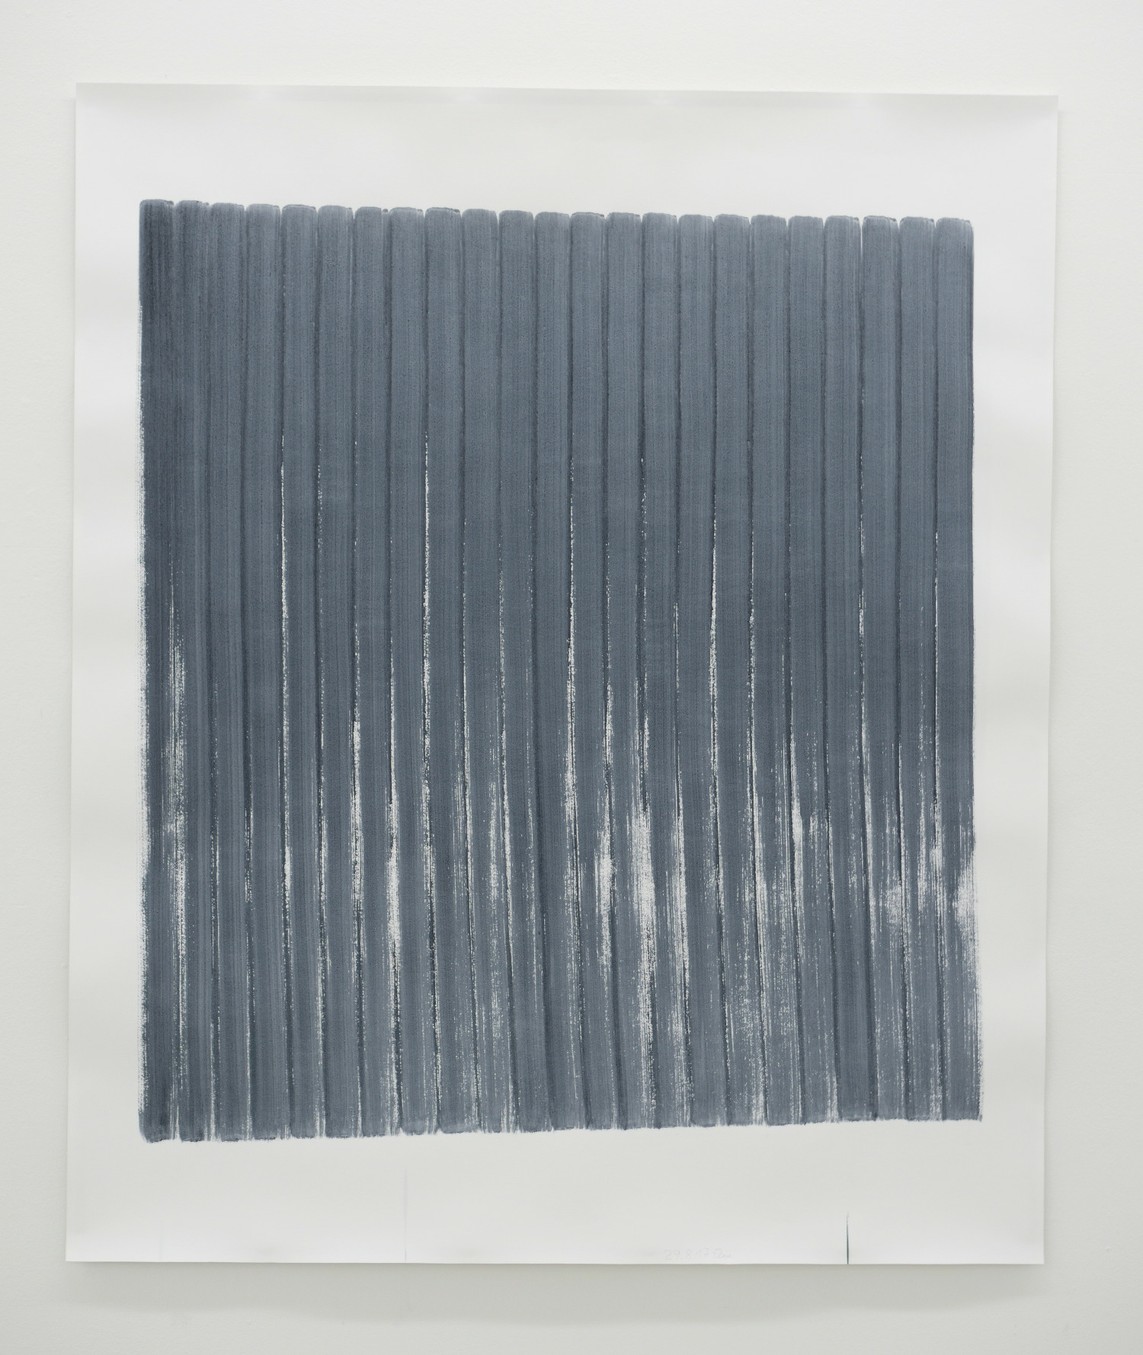 o.T. (29.8.17), Aquarell auf Papier, 2017, 182 x 152 cm